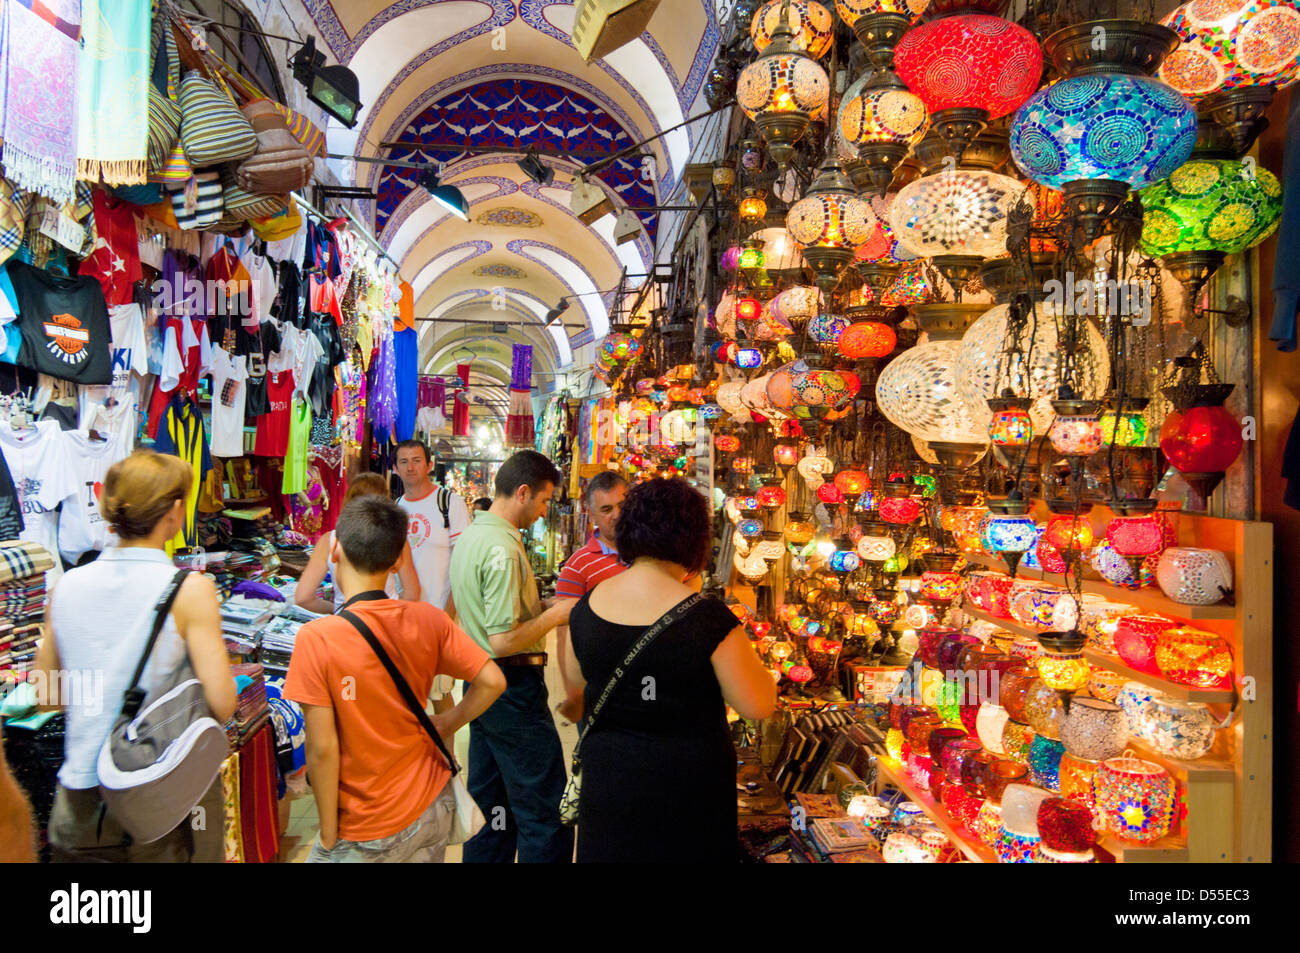 Les touristes du shopping dans le Grand Bazar, Kapali Carsi, Sultanahmet, Istanbul, Turquie Banque D'Images